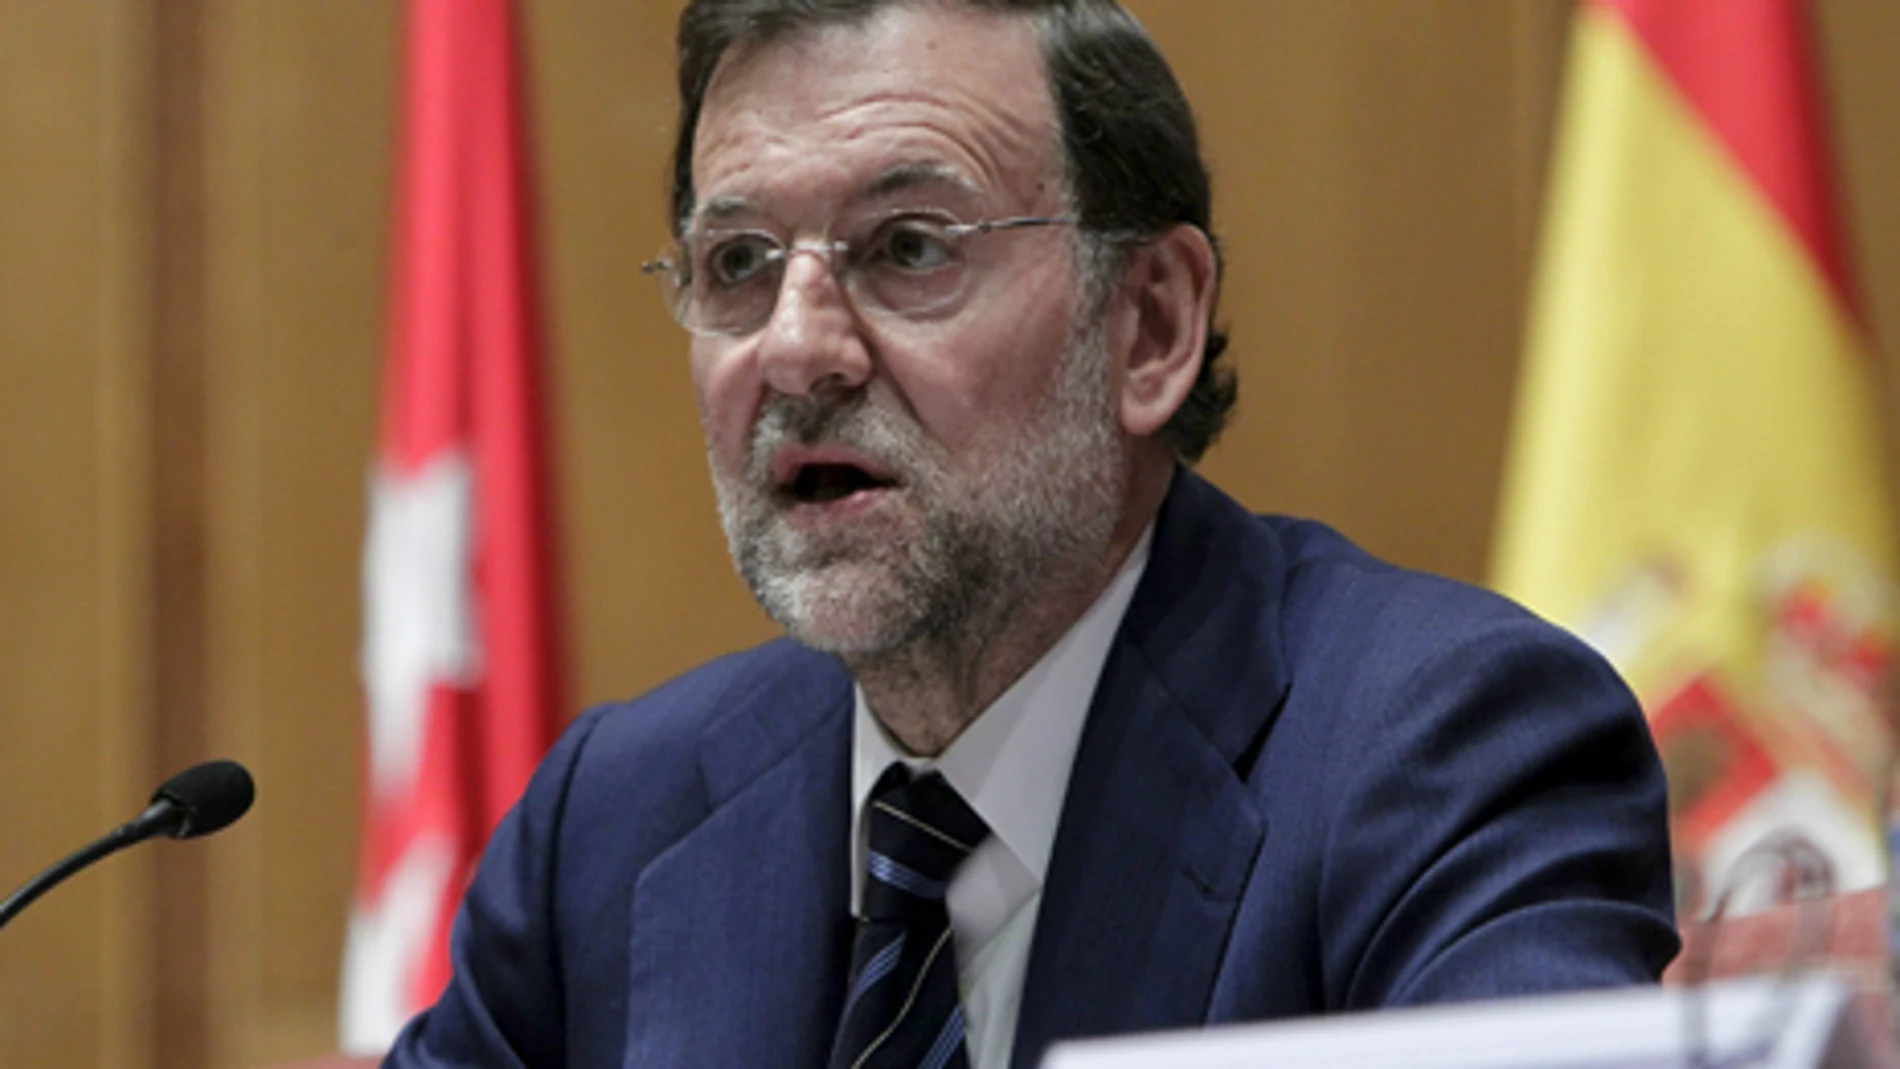 Rajoy en una comparecencia pública.